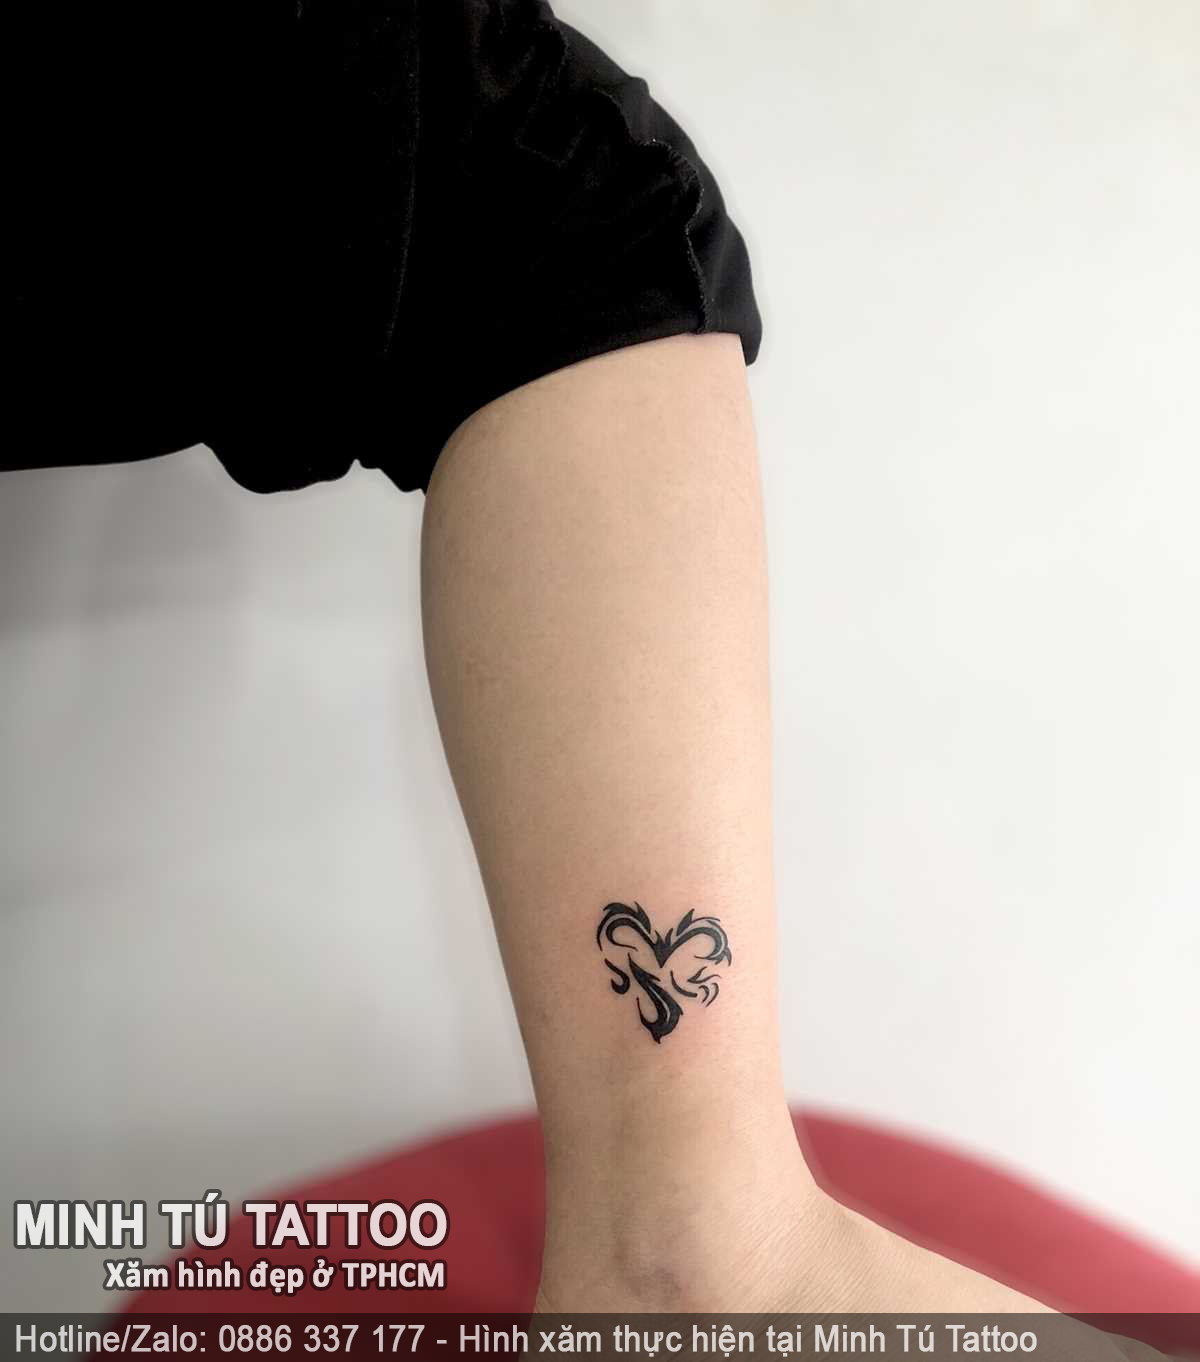 Tác phẩm hình xăm do Minh Tú Tattoo thực hiện 91